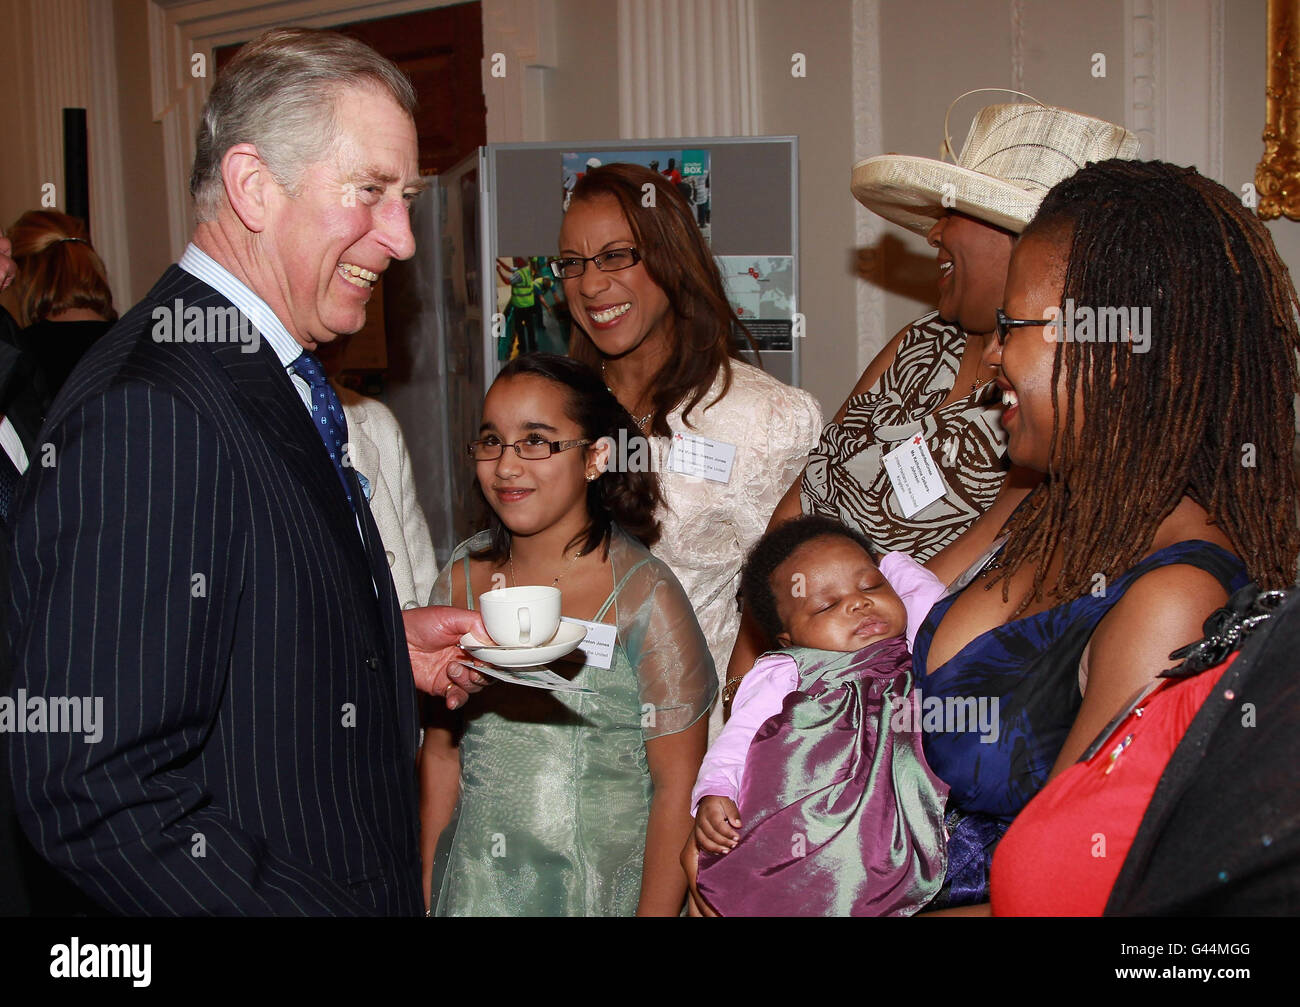 Il principe del Galles incontra i membri del gruppo britannico haitiani nel corso di un ricevimento della Croce Rossa a Mansion House, Londra, per ringraziare i volontari e i donatori i cui sforzi stanno contribuendo alla ricostruzione del paese dopo il disastro del gennaio 2010. Foto Stock